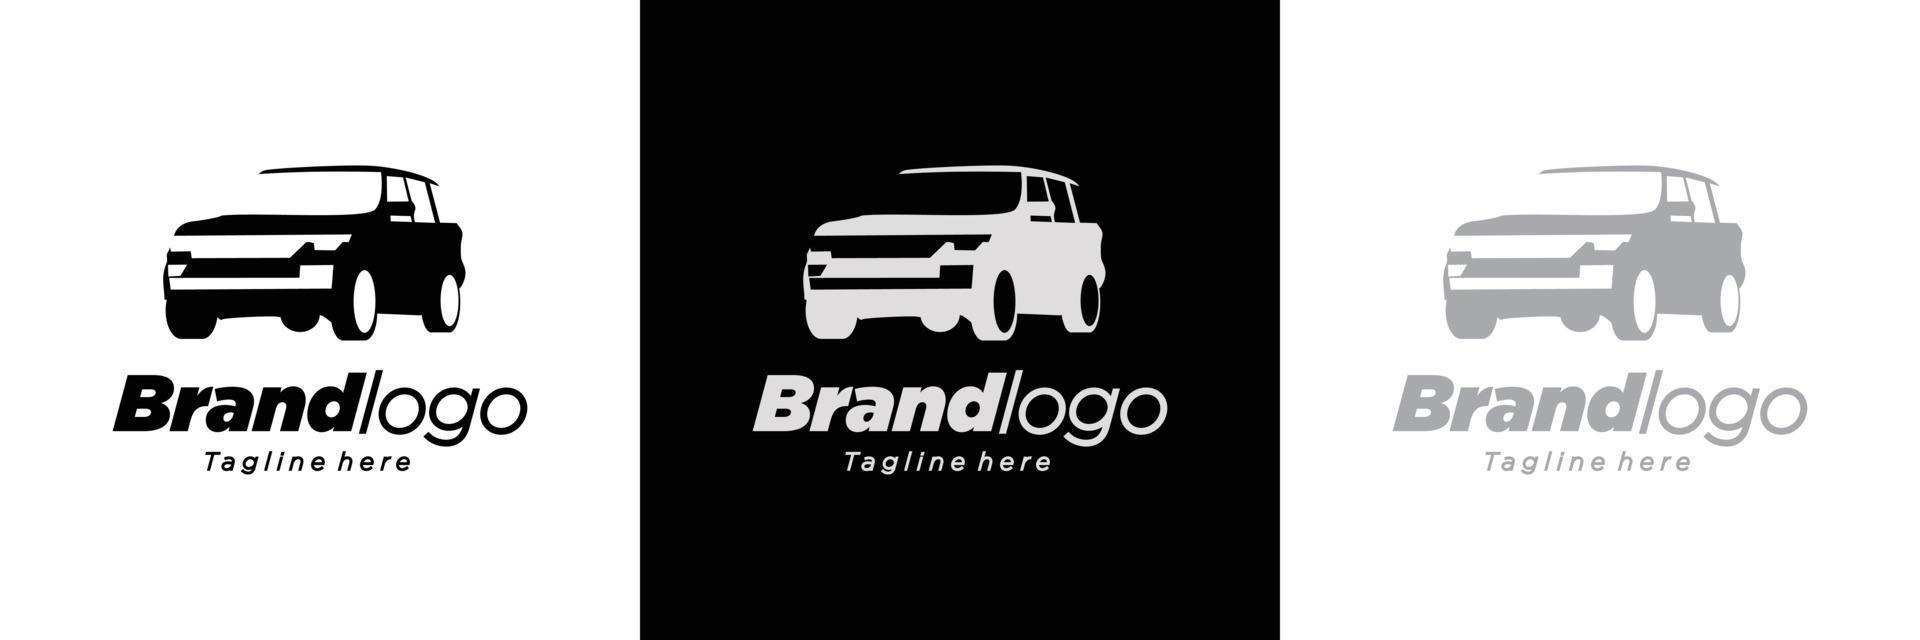 diseño de logotipo de automóvil simple y moderno con una apariencia atractiva y atractiva vector